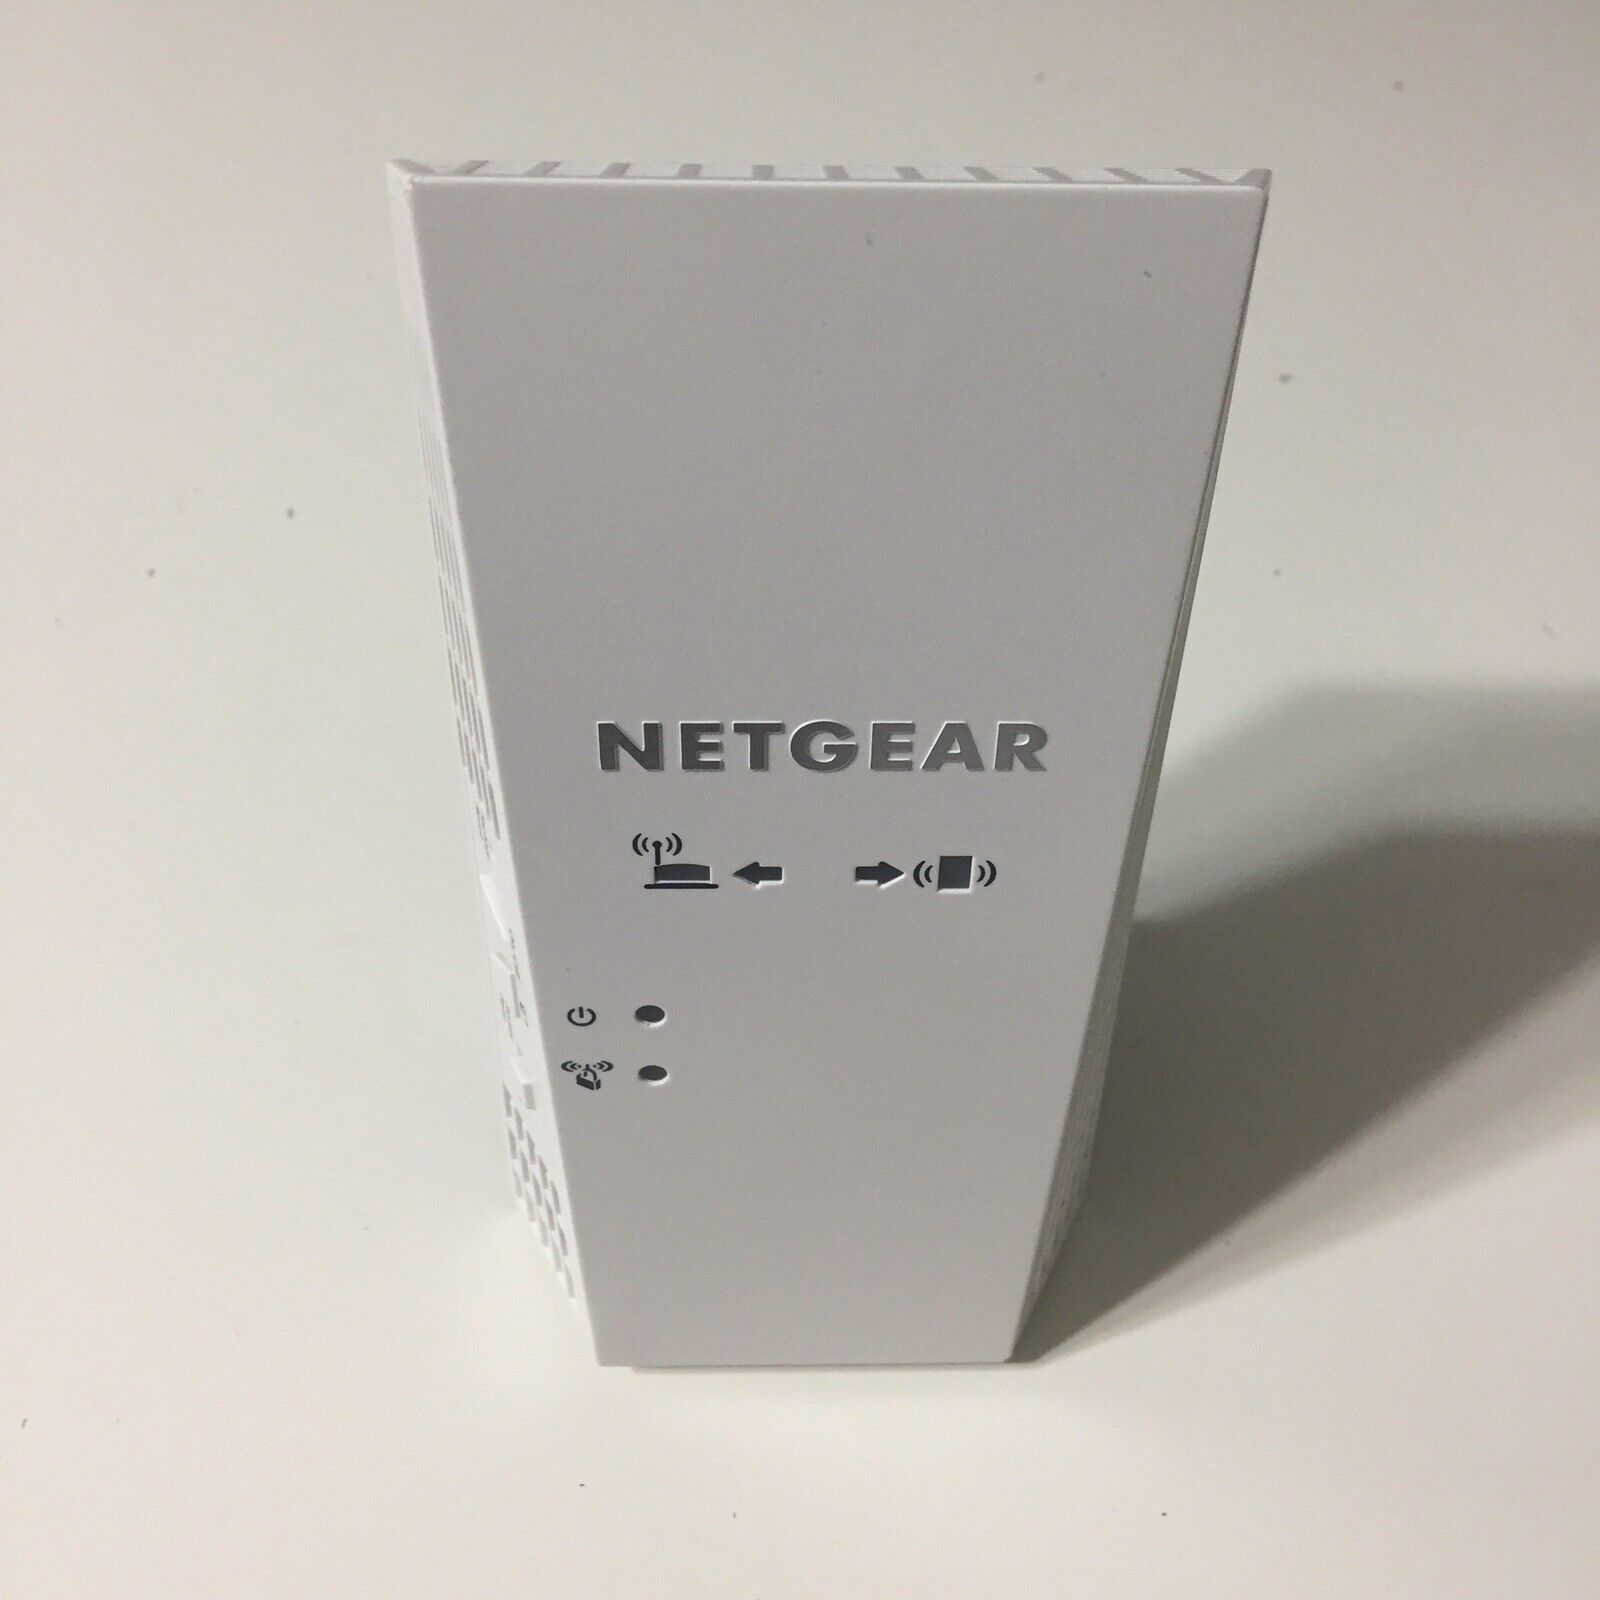 Netgear Nighthawk X4 WiFi Mesh Extender AC2200 EX7300 Tested Works